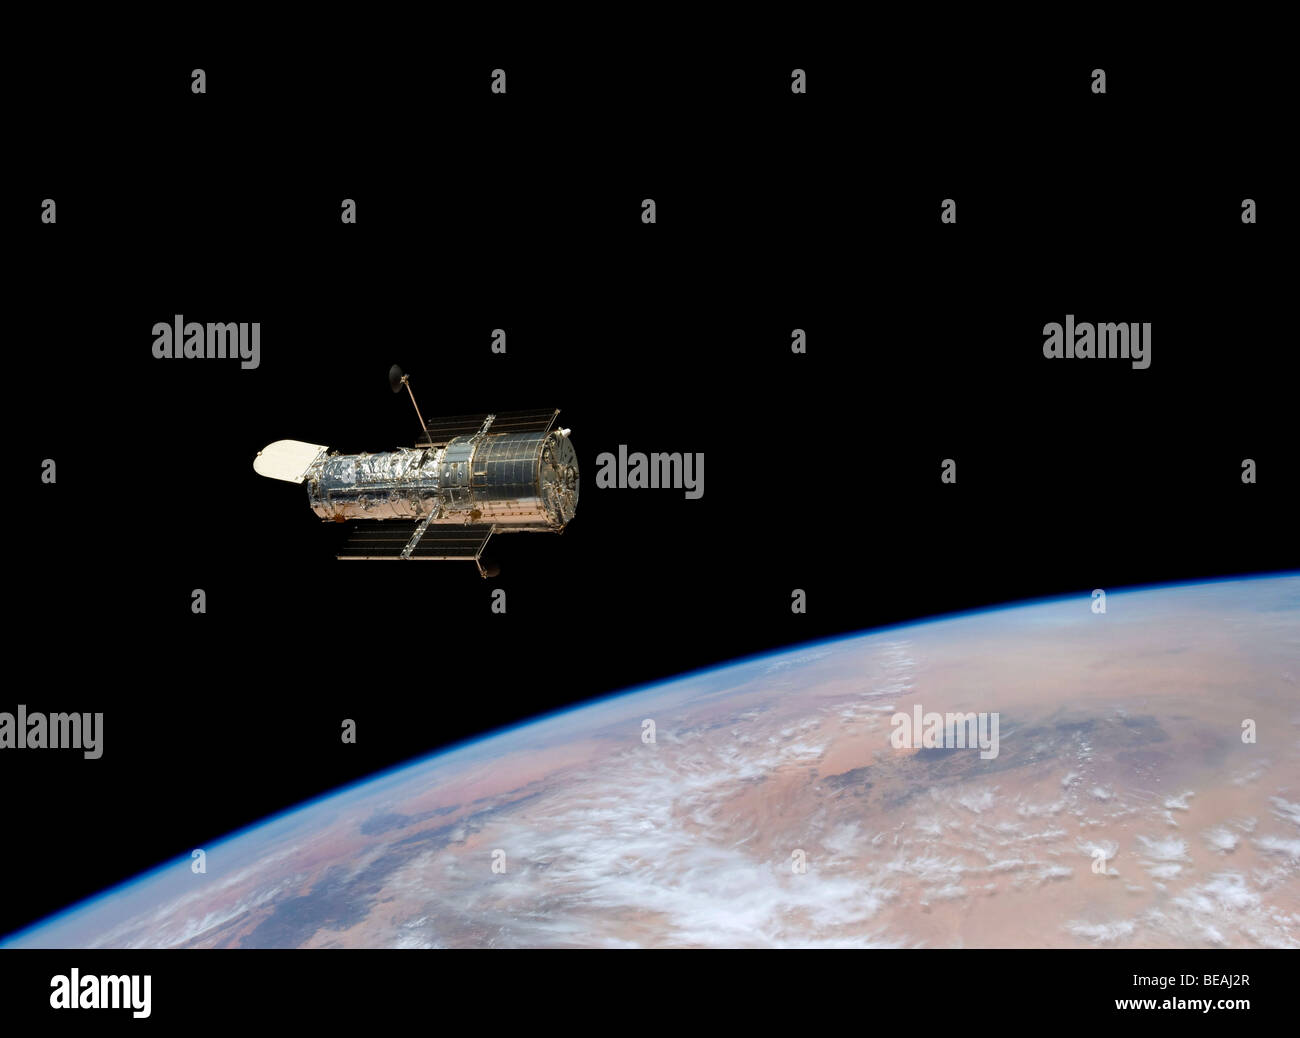 Telescopio Spaziale Hubble nel 2009 dopo essere stato ristrutturato. Ottimizzato e la versione avanzata di un originale immagine della NASA. Credit NASA Foto Stock